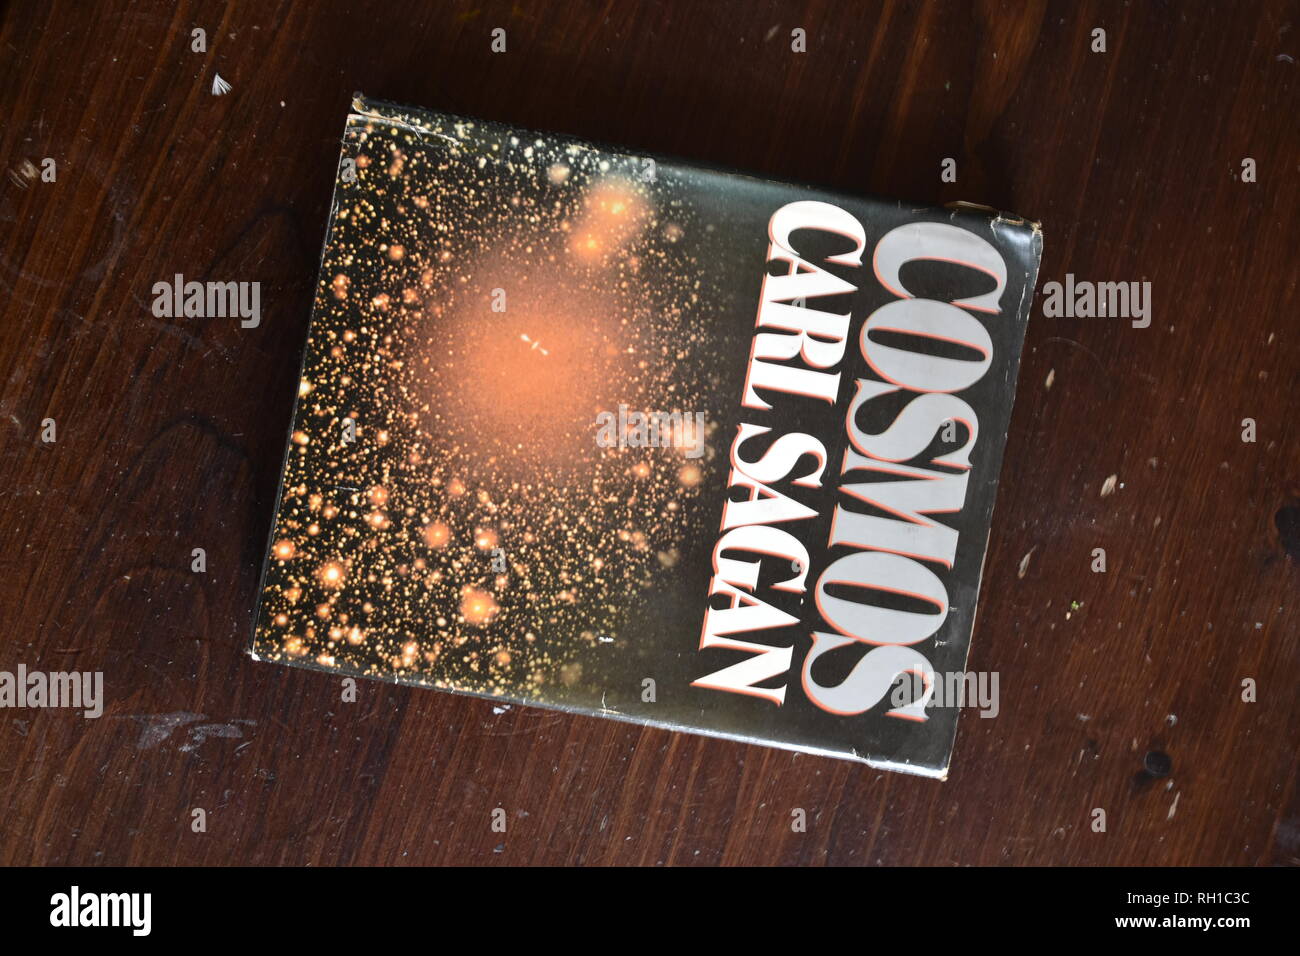 Cosmos Carl Sagan book Stock Photo